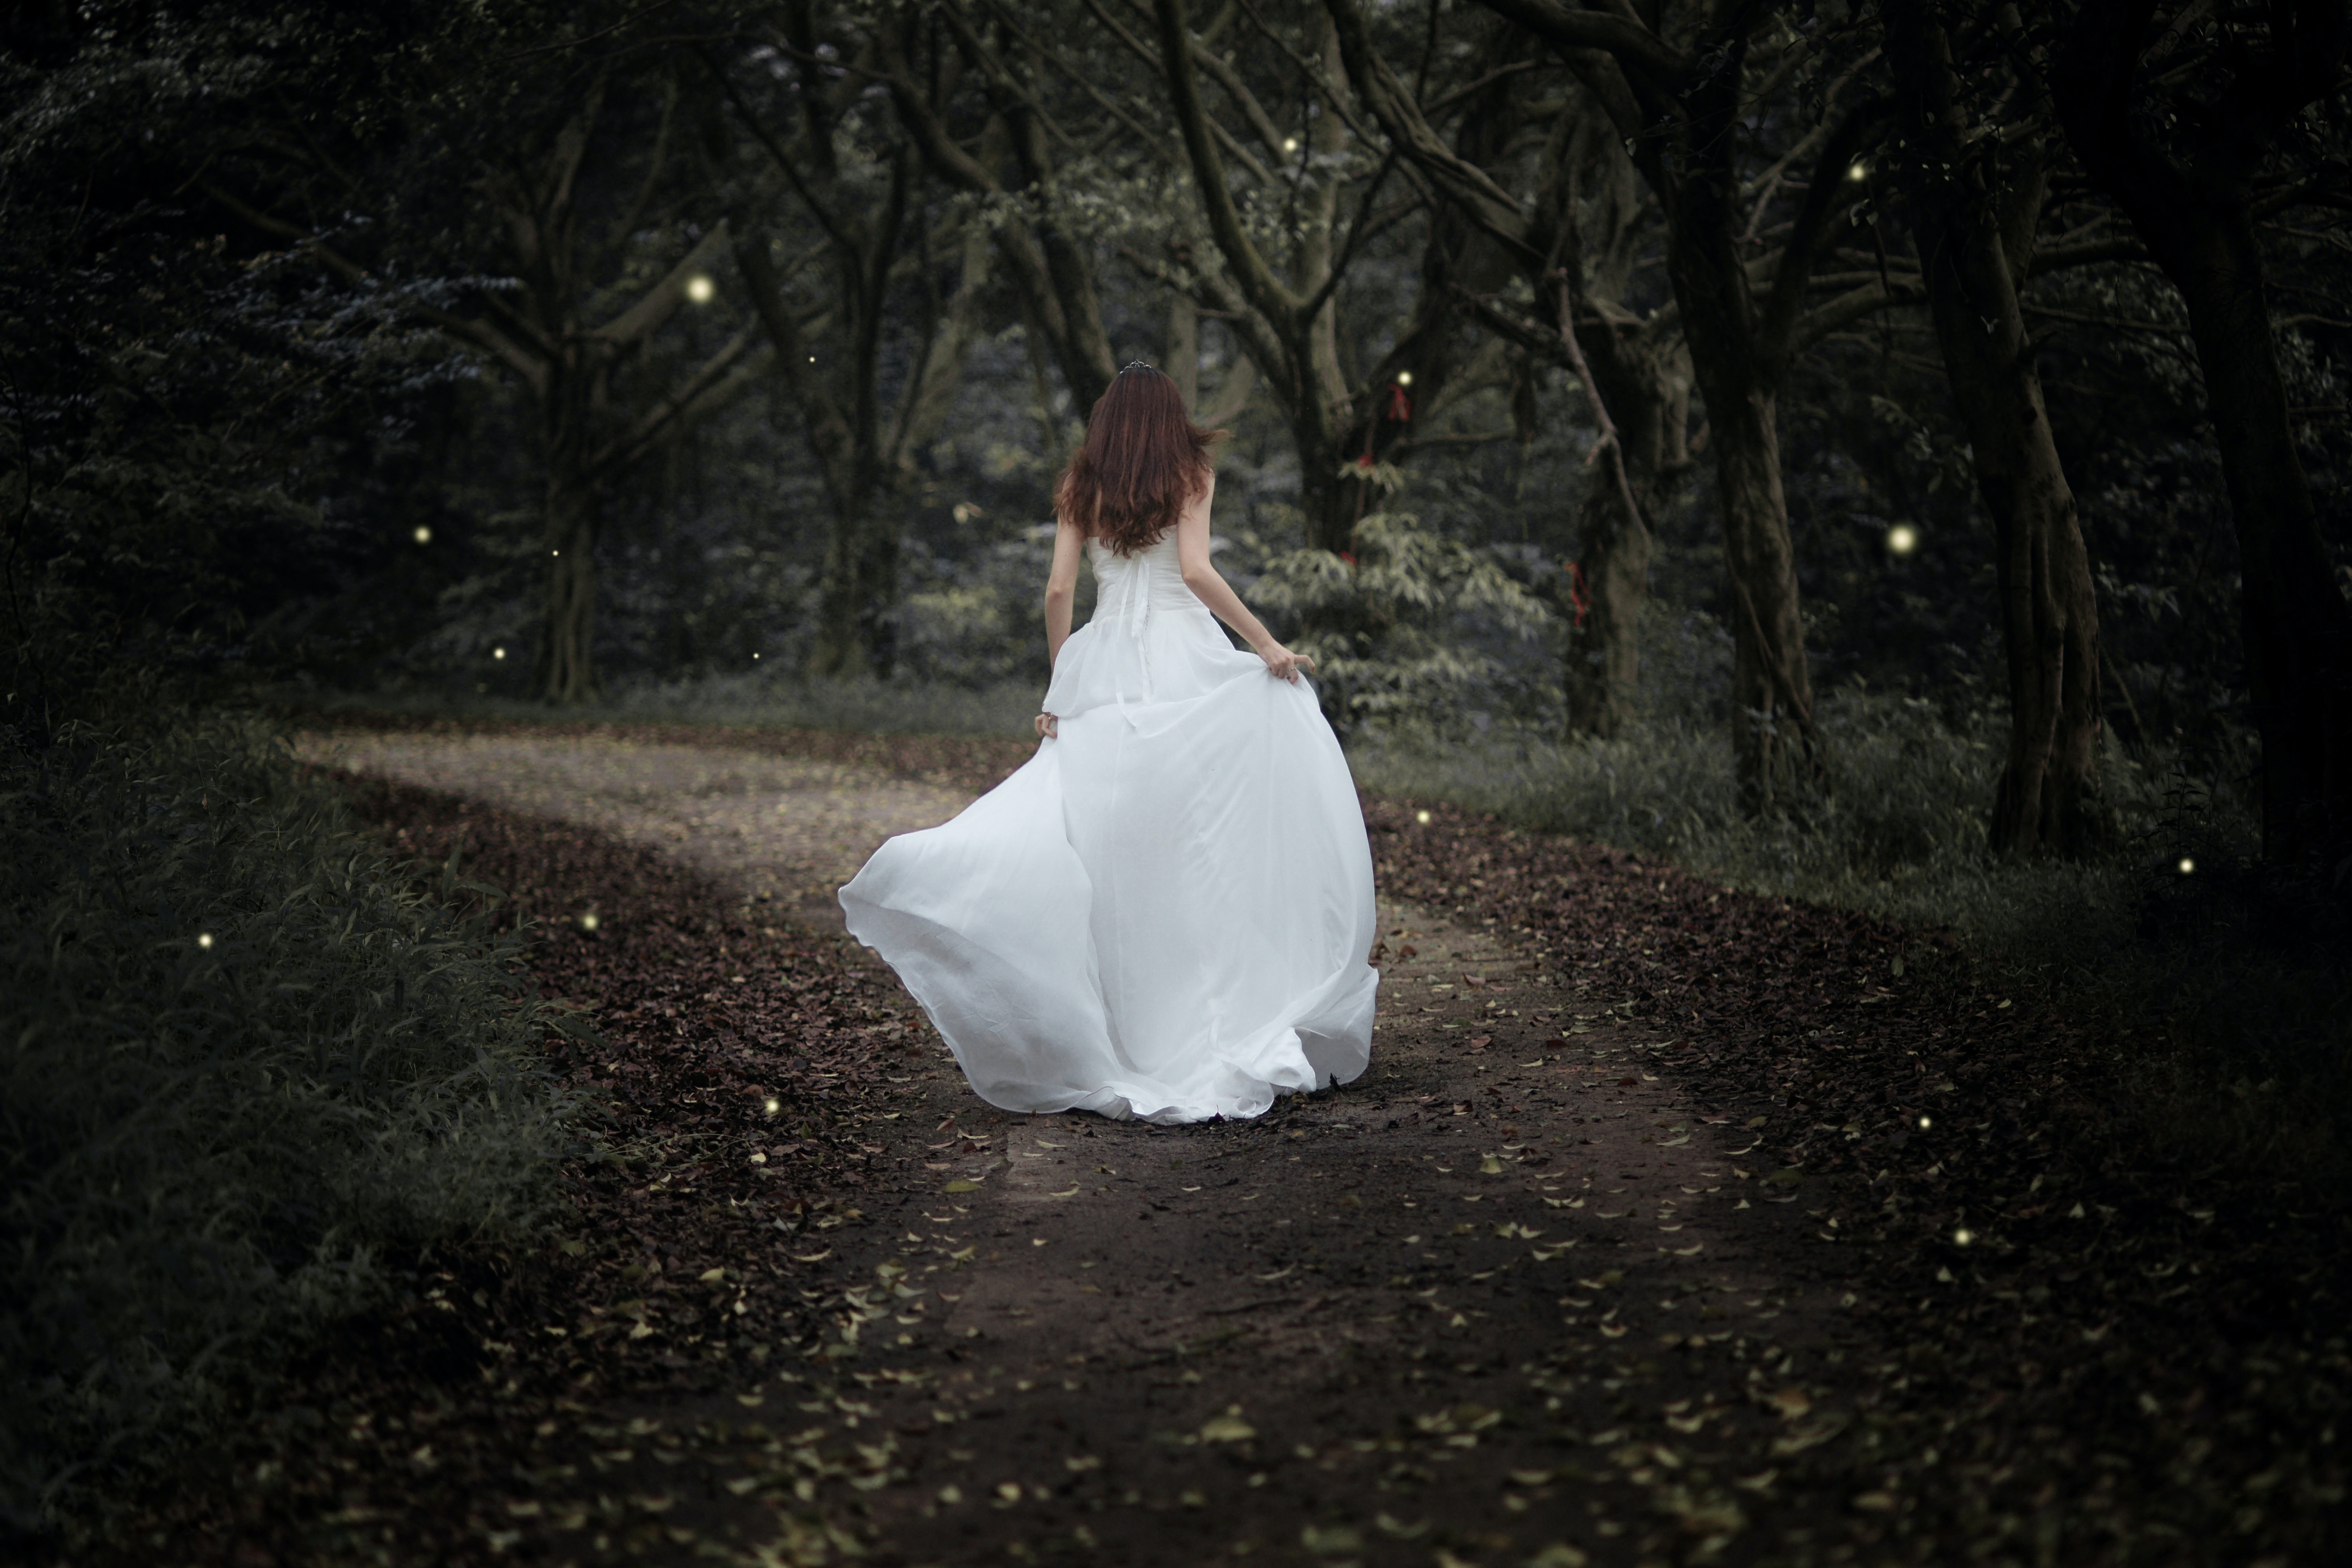 Eine Frau in einem weißen Kleid geht einen Pfad im Wald entlang.